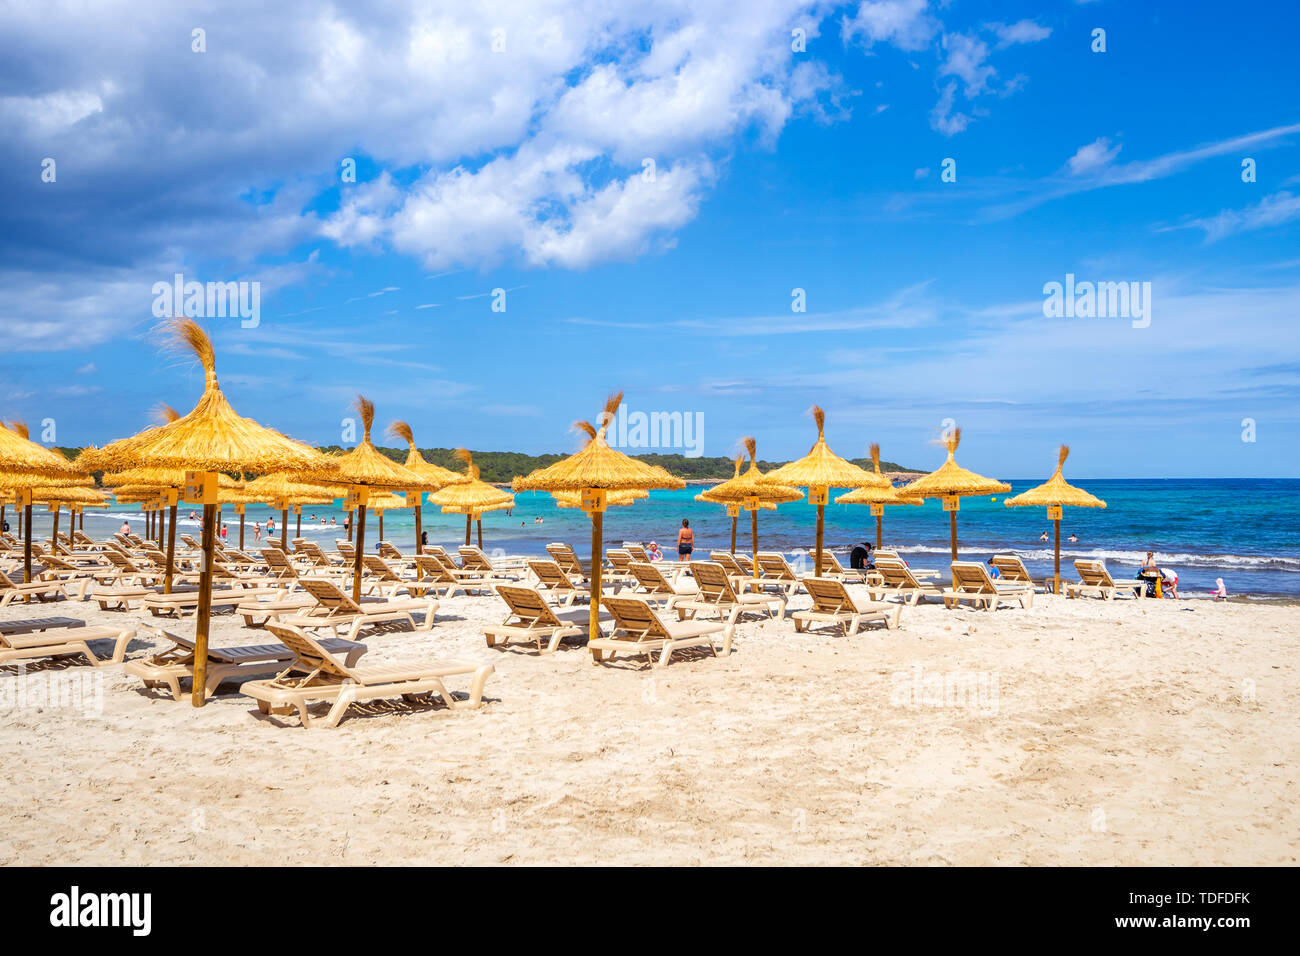 Beach of Sa Coma in Mallorca, Spain Stock Photo